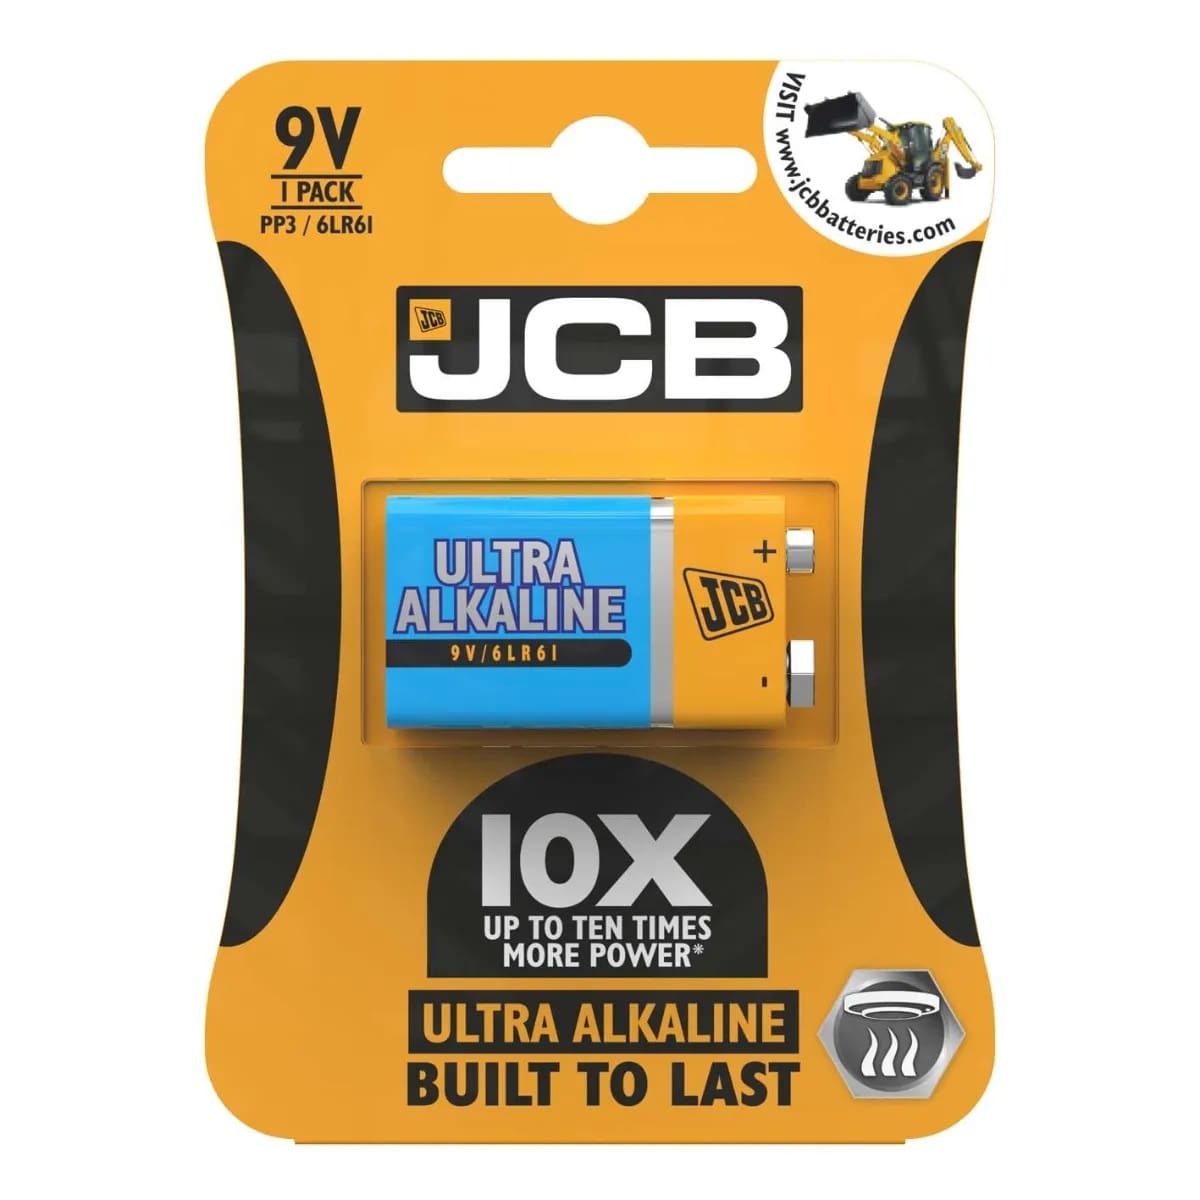 JCB 9V Ultra Alkaline, Pack of 1 Battery PP3